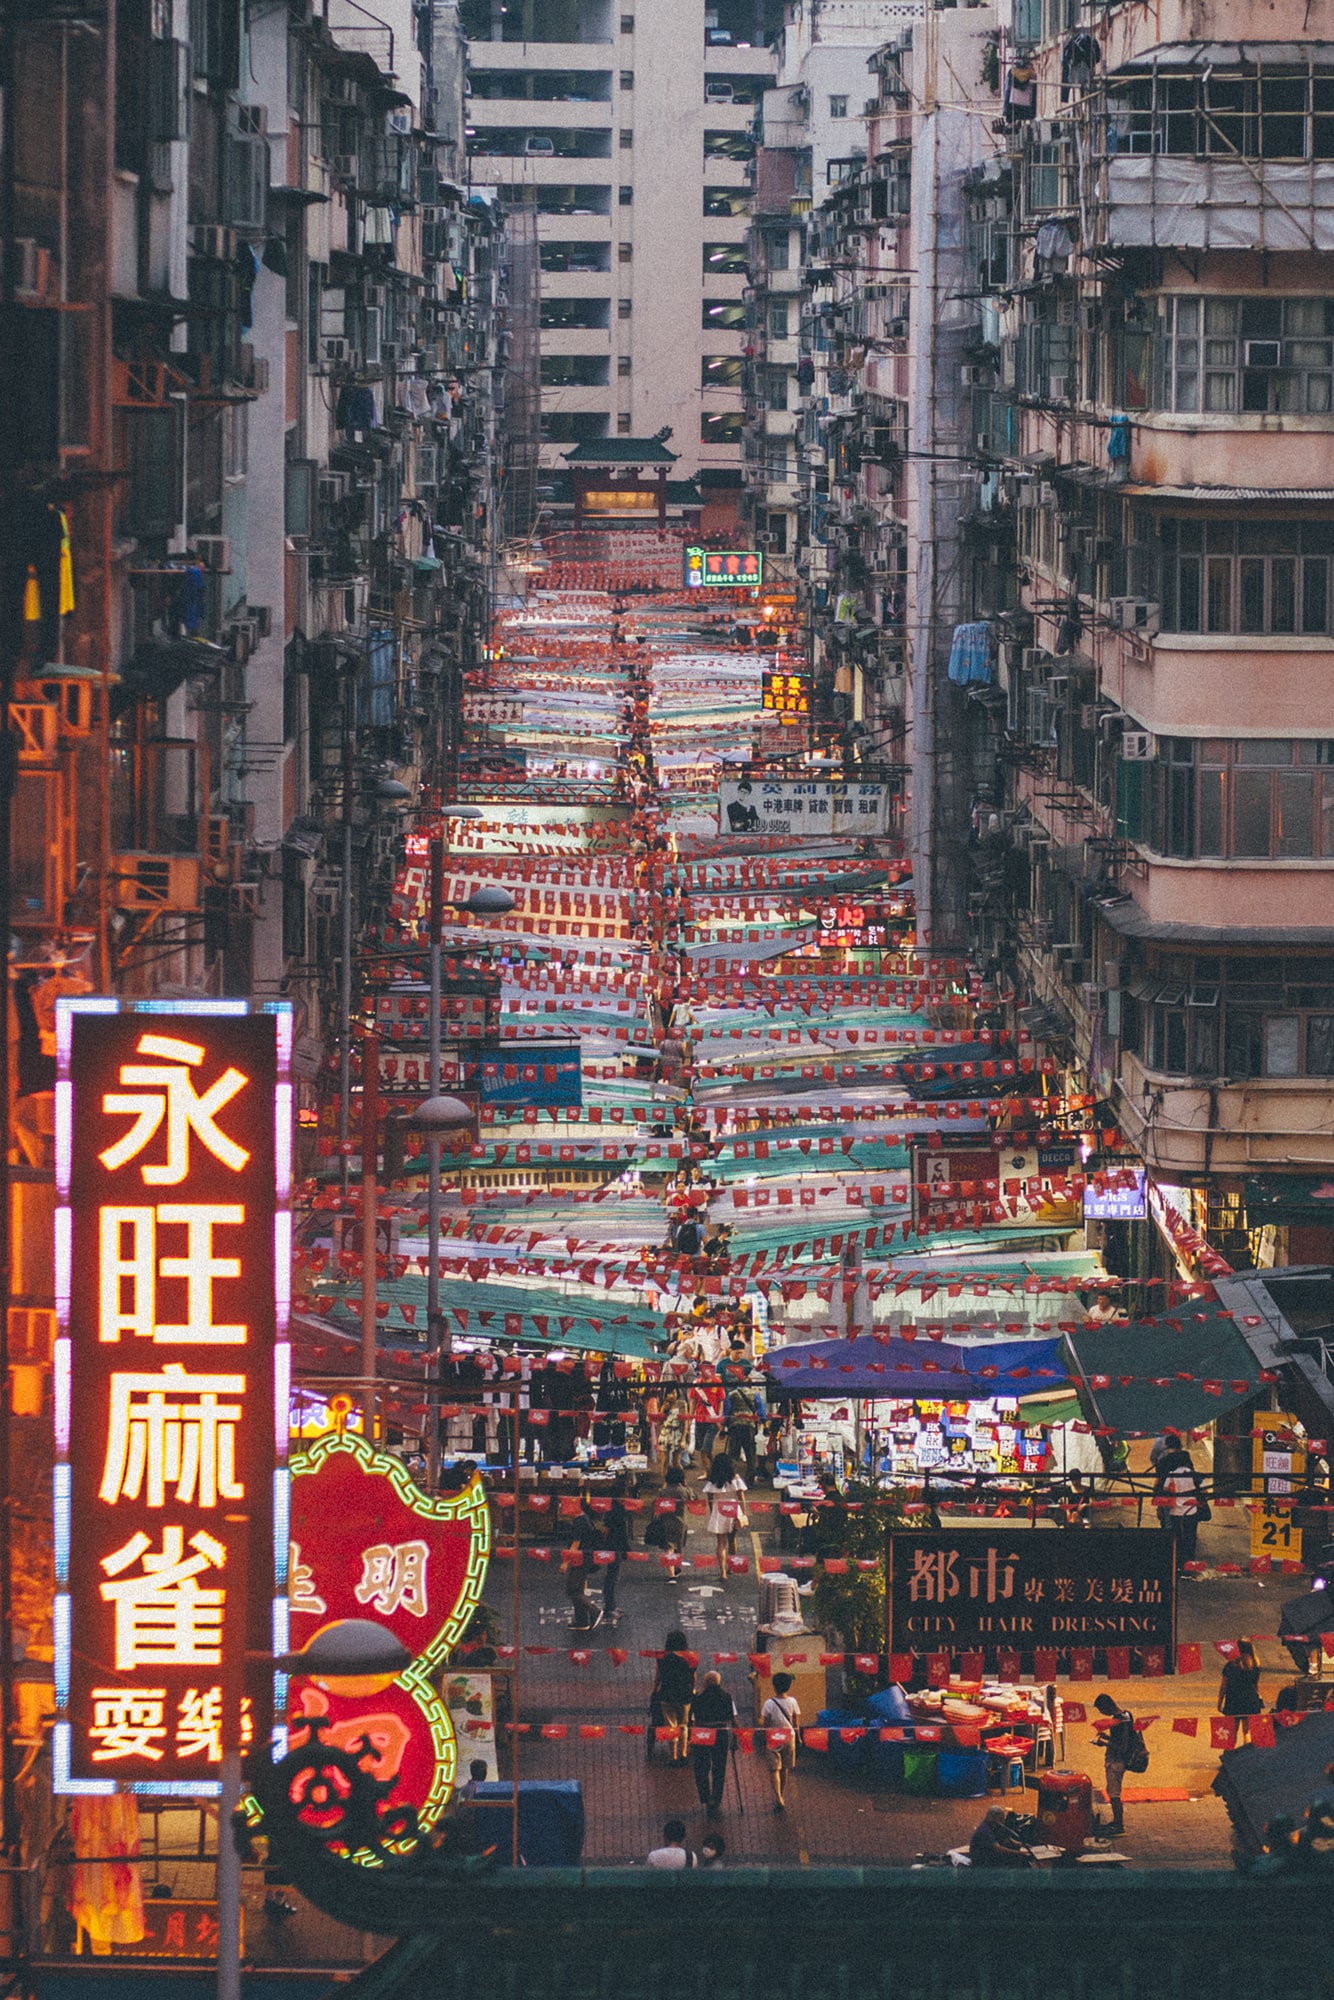 PHOTOGRAPHER CAMERA STREET ROADSIDE  Central Vintage Hong Kong Photo 香港旧照片 27227